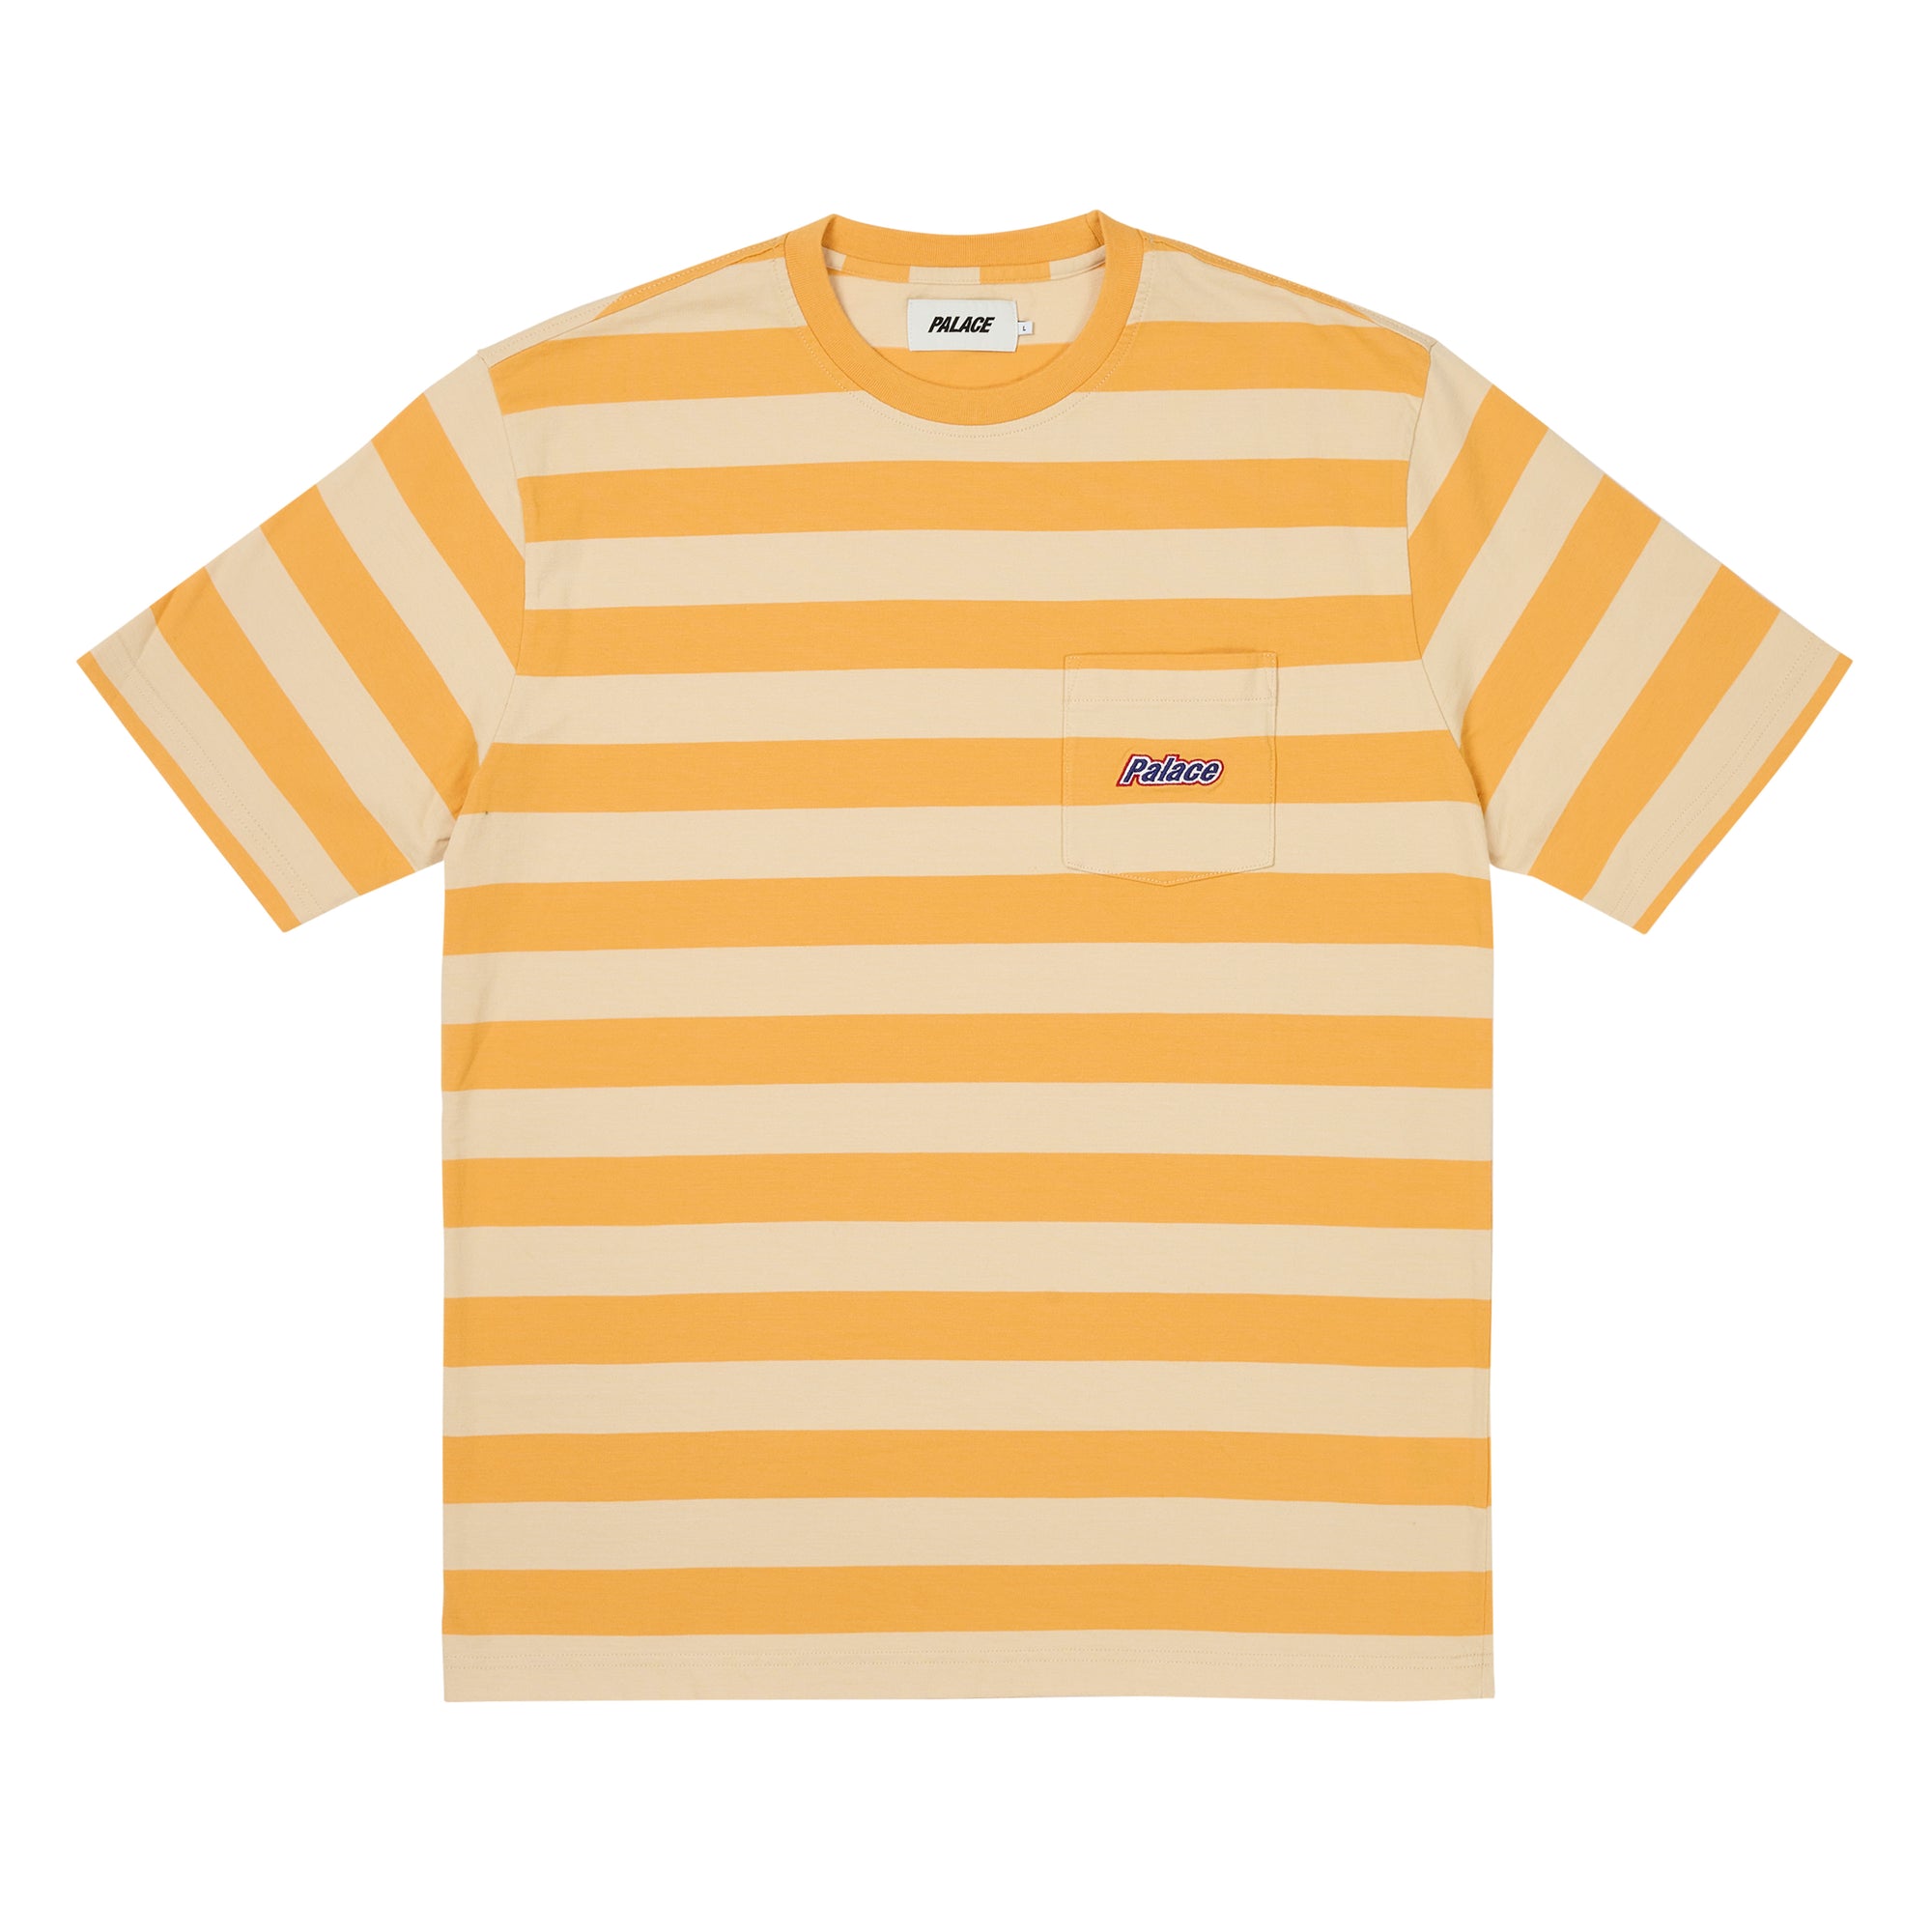 Palace - Men’s Block Stripe T-Shirt - (Amber Nectar) view 1